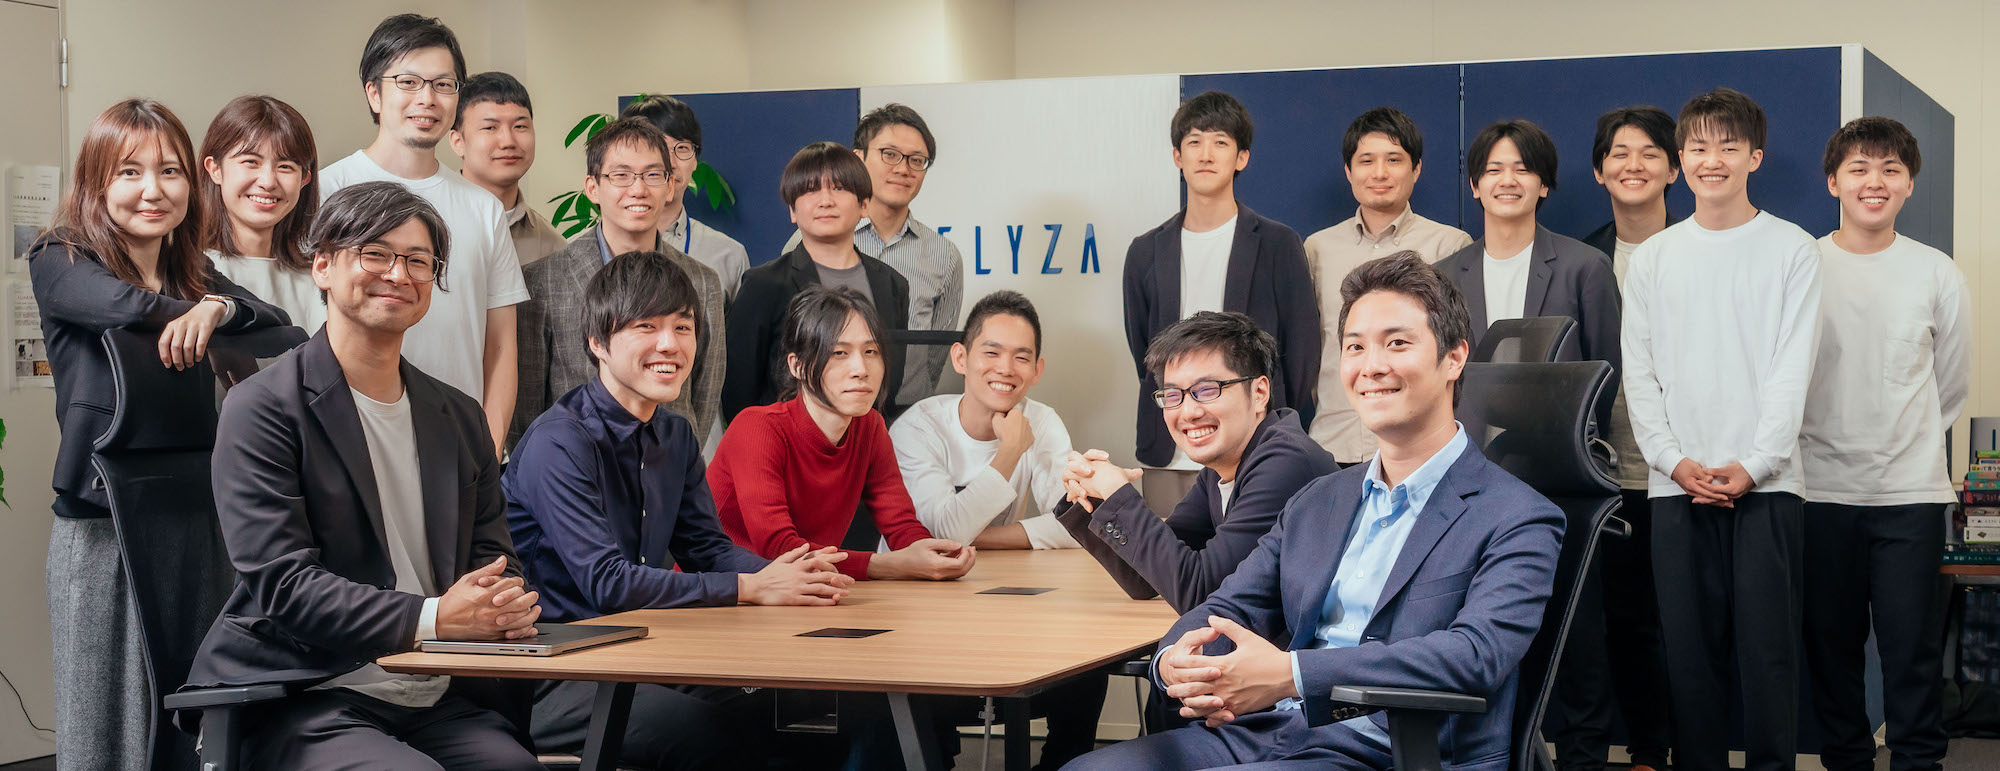 東大松尾研発、AIスタートアップ企業でMLエンジニアとしてPJTを動かす長期インターン生を募集